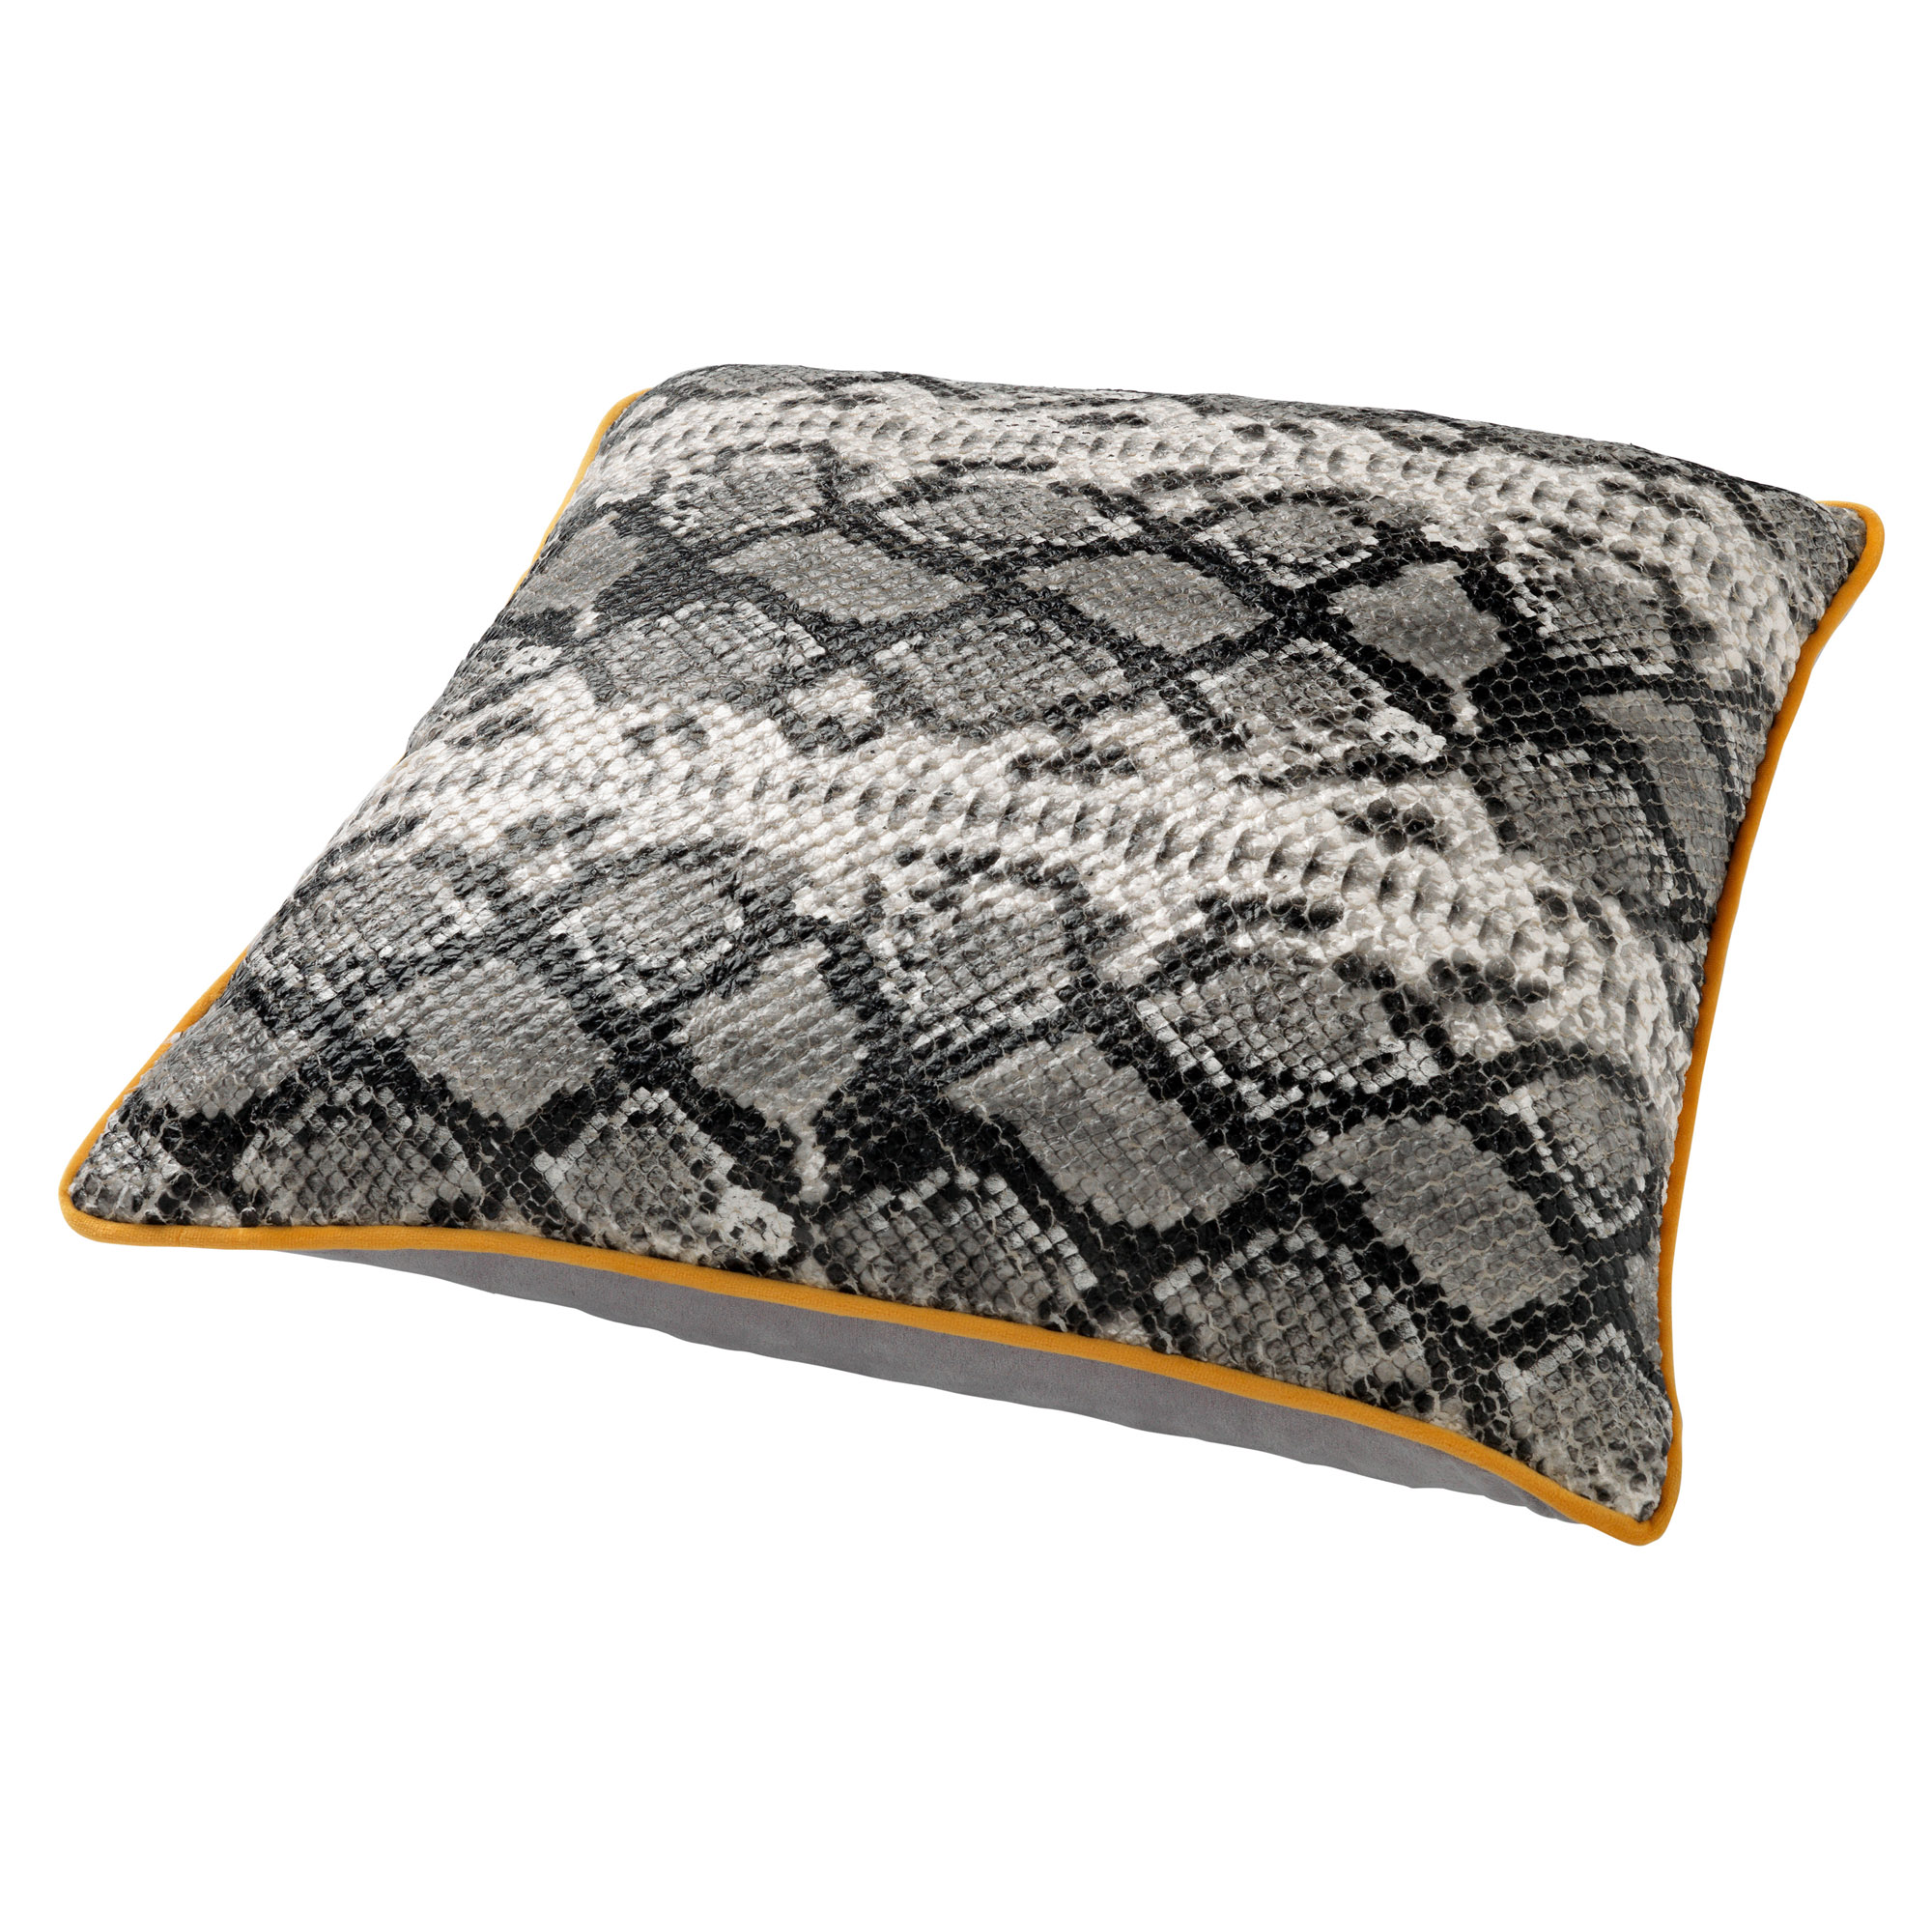 ROAN - Kussenhoes met slangenpatroon Charcoal Gray 45x45 cm - grijs